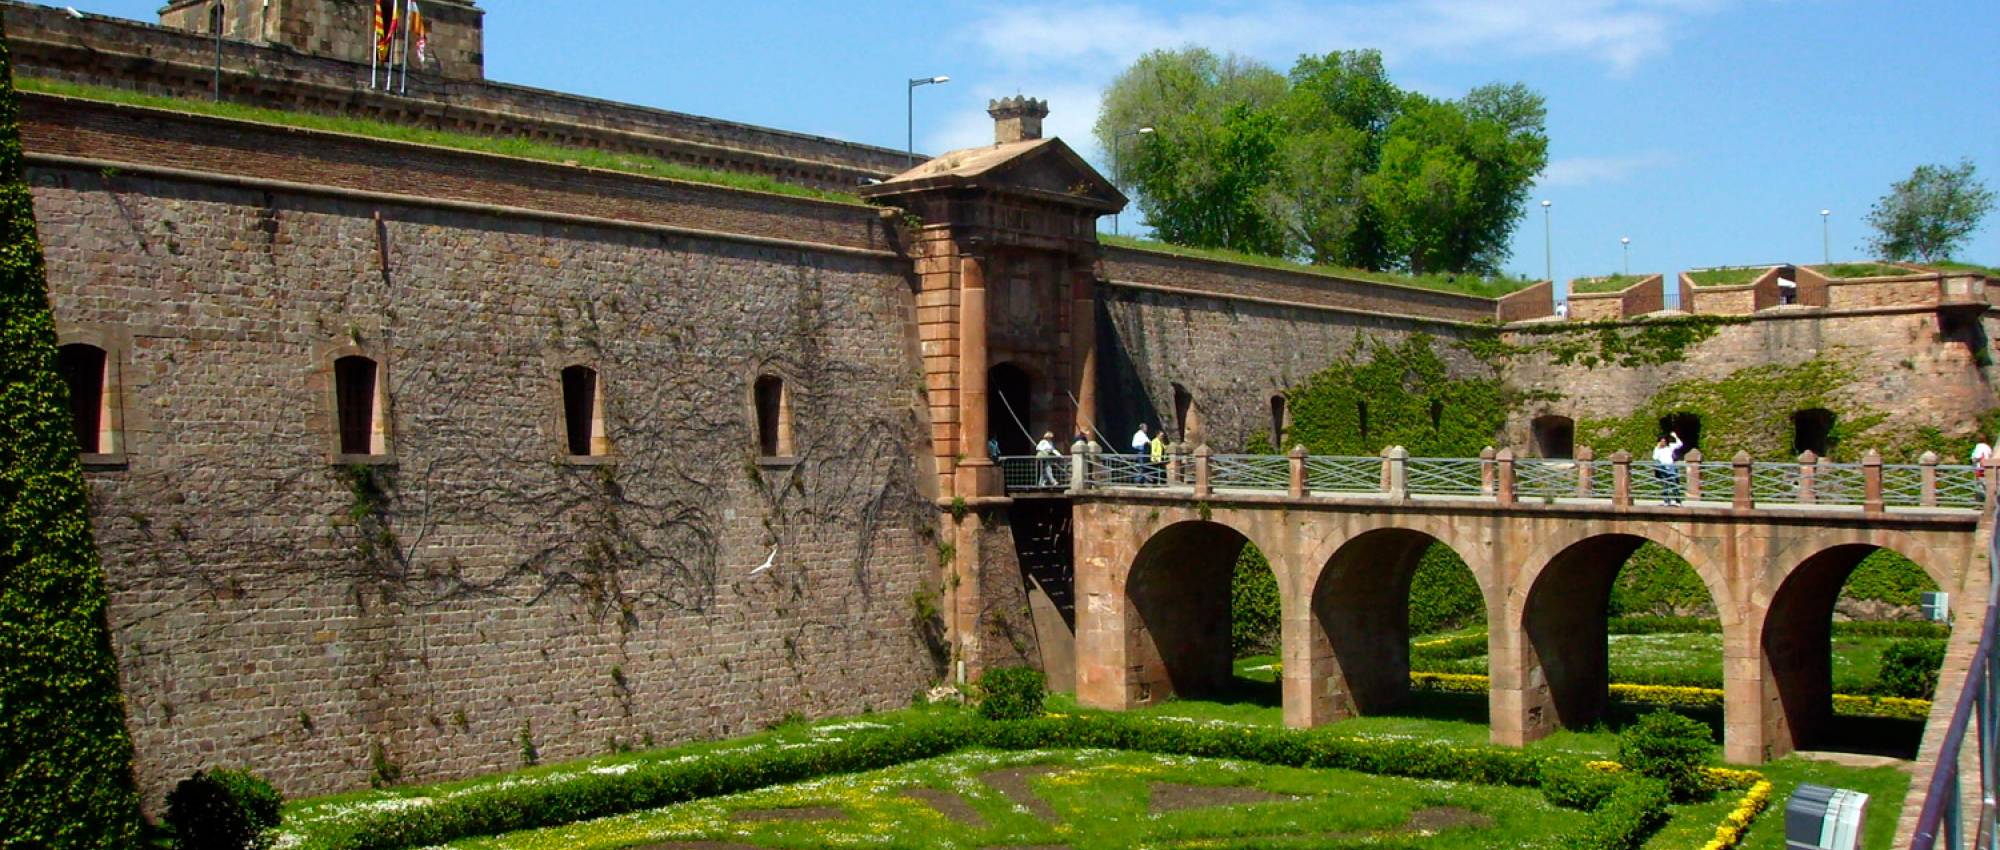 Entrance Moat of Castle of Montjuïc. Public Domain